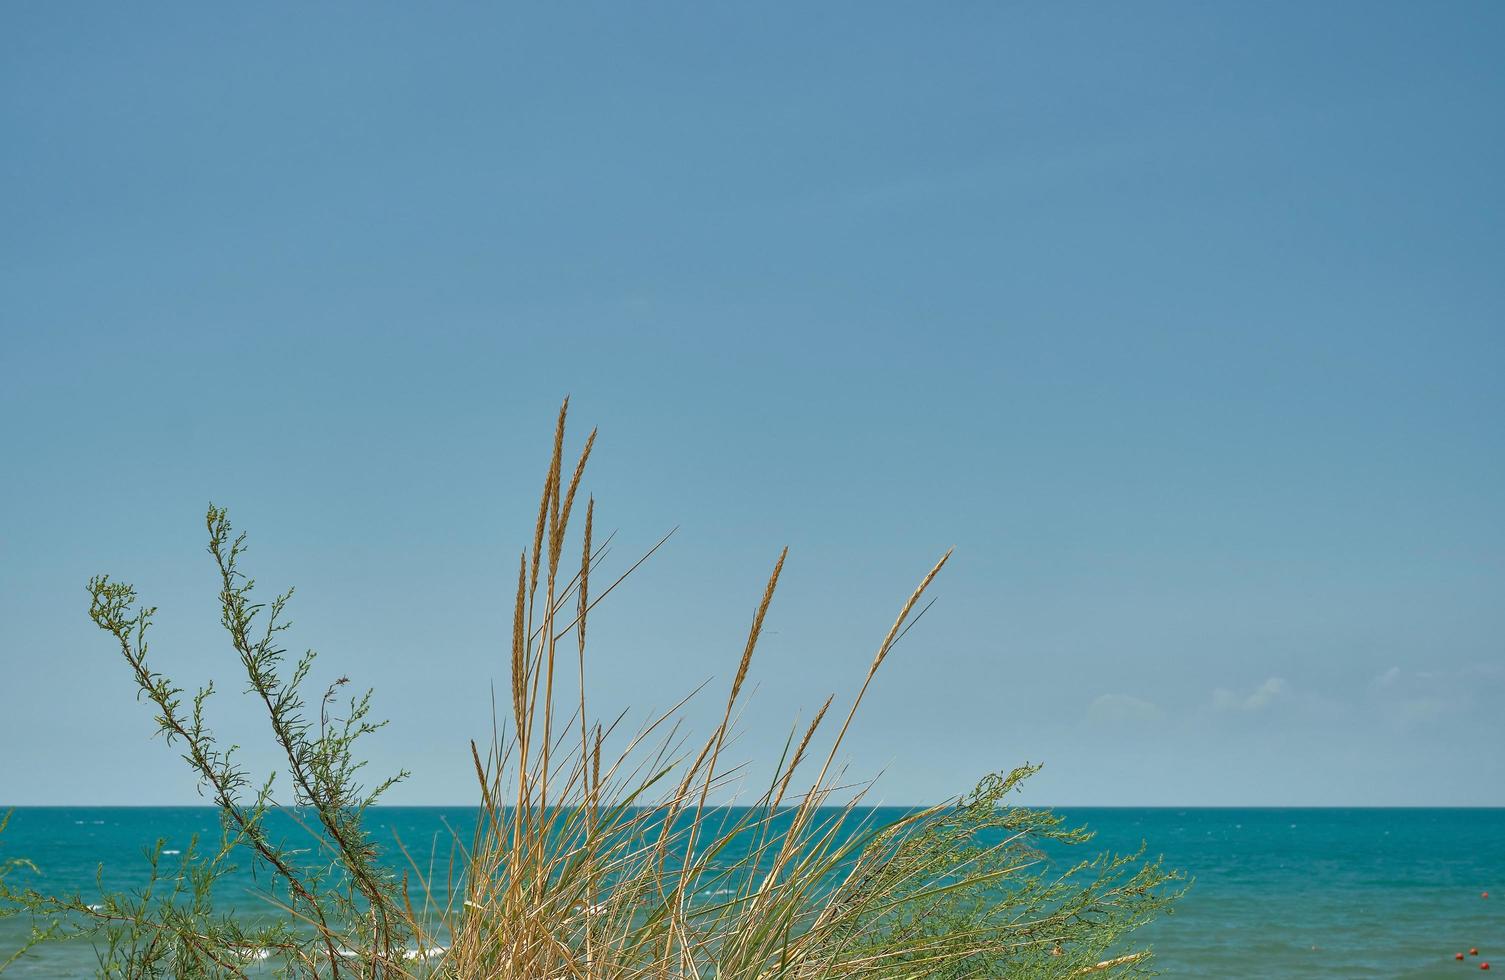 panorama del mar con dunas de arena, enfoque en la hierba, fondo de cielo azul borroso, fin de semana de verano, fondo para salvapantallas o papel tapiz para pantalla o publicidad, espacio libre para texto foto